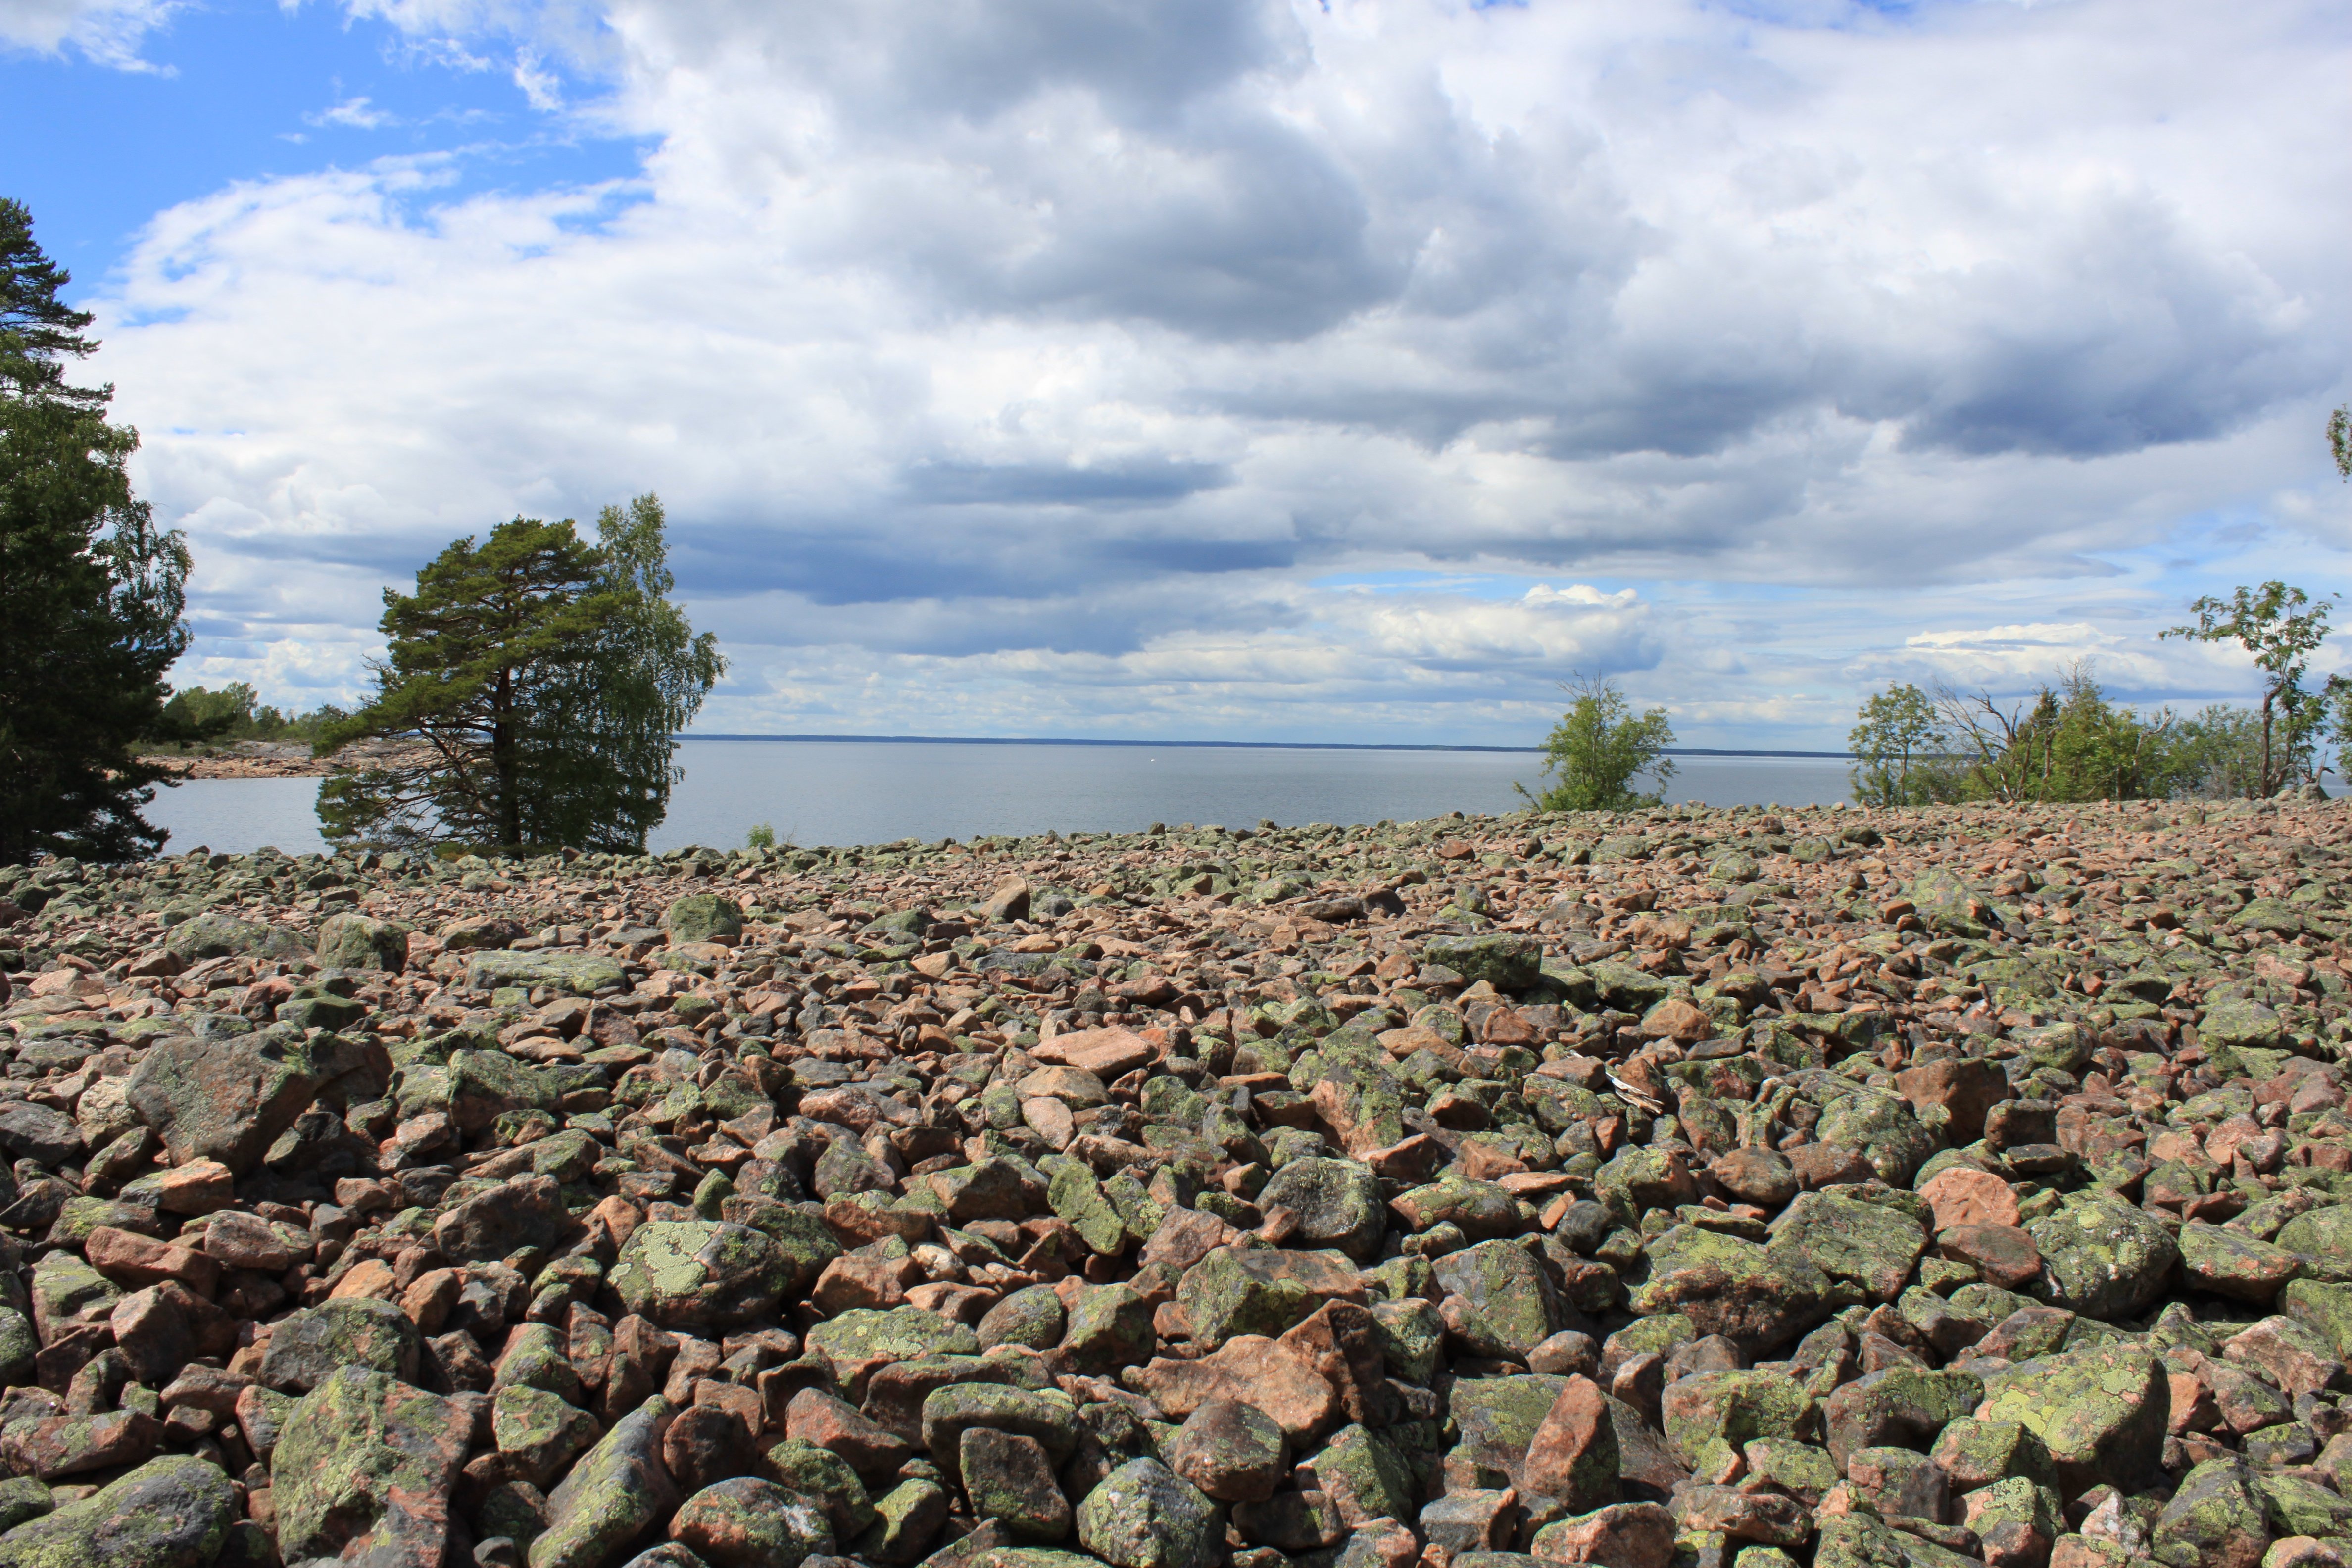 En plan öppen yta vid havet. Ytan är täckt av stenar i olika storlekar.